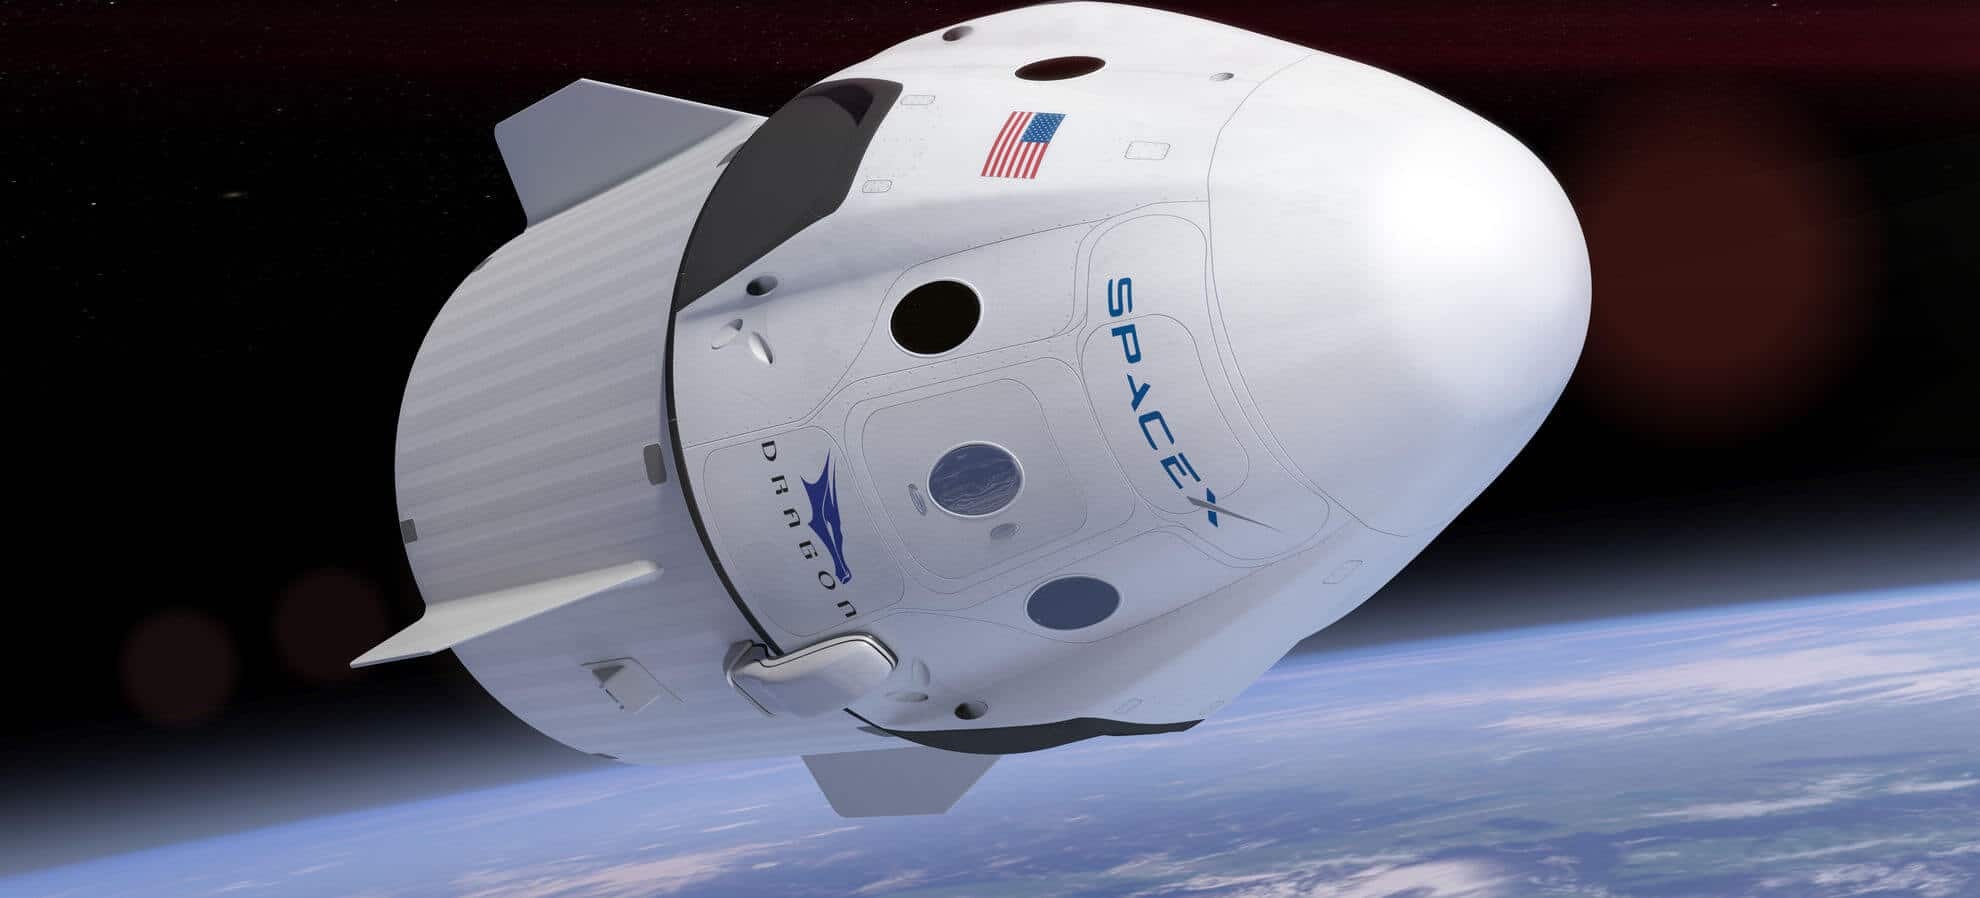 SpaceX, kutupsal Starlink uydusunun fırlatılması için FCC izni aldı 2021


